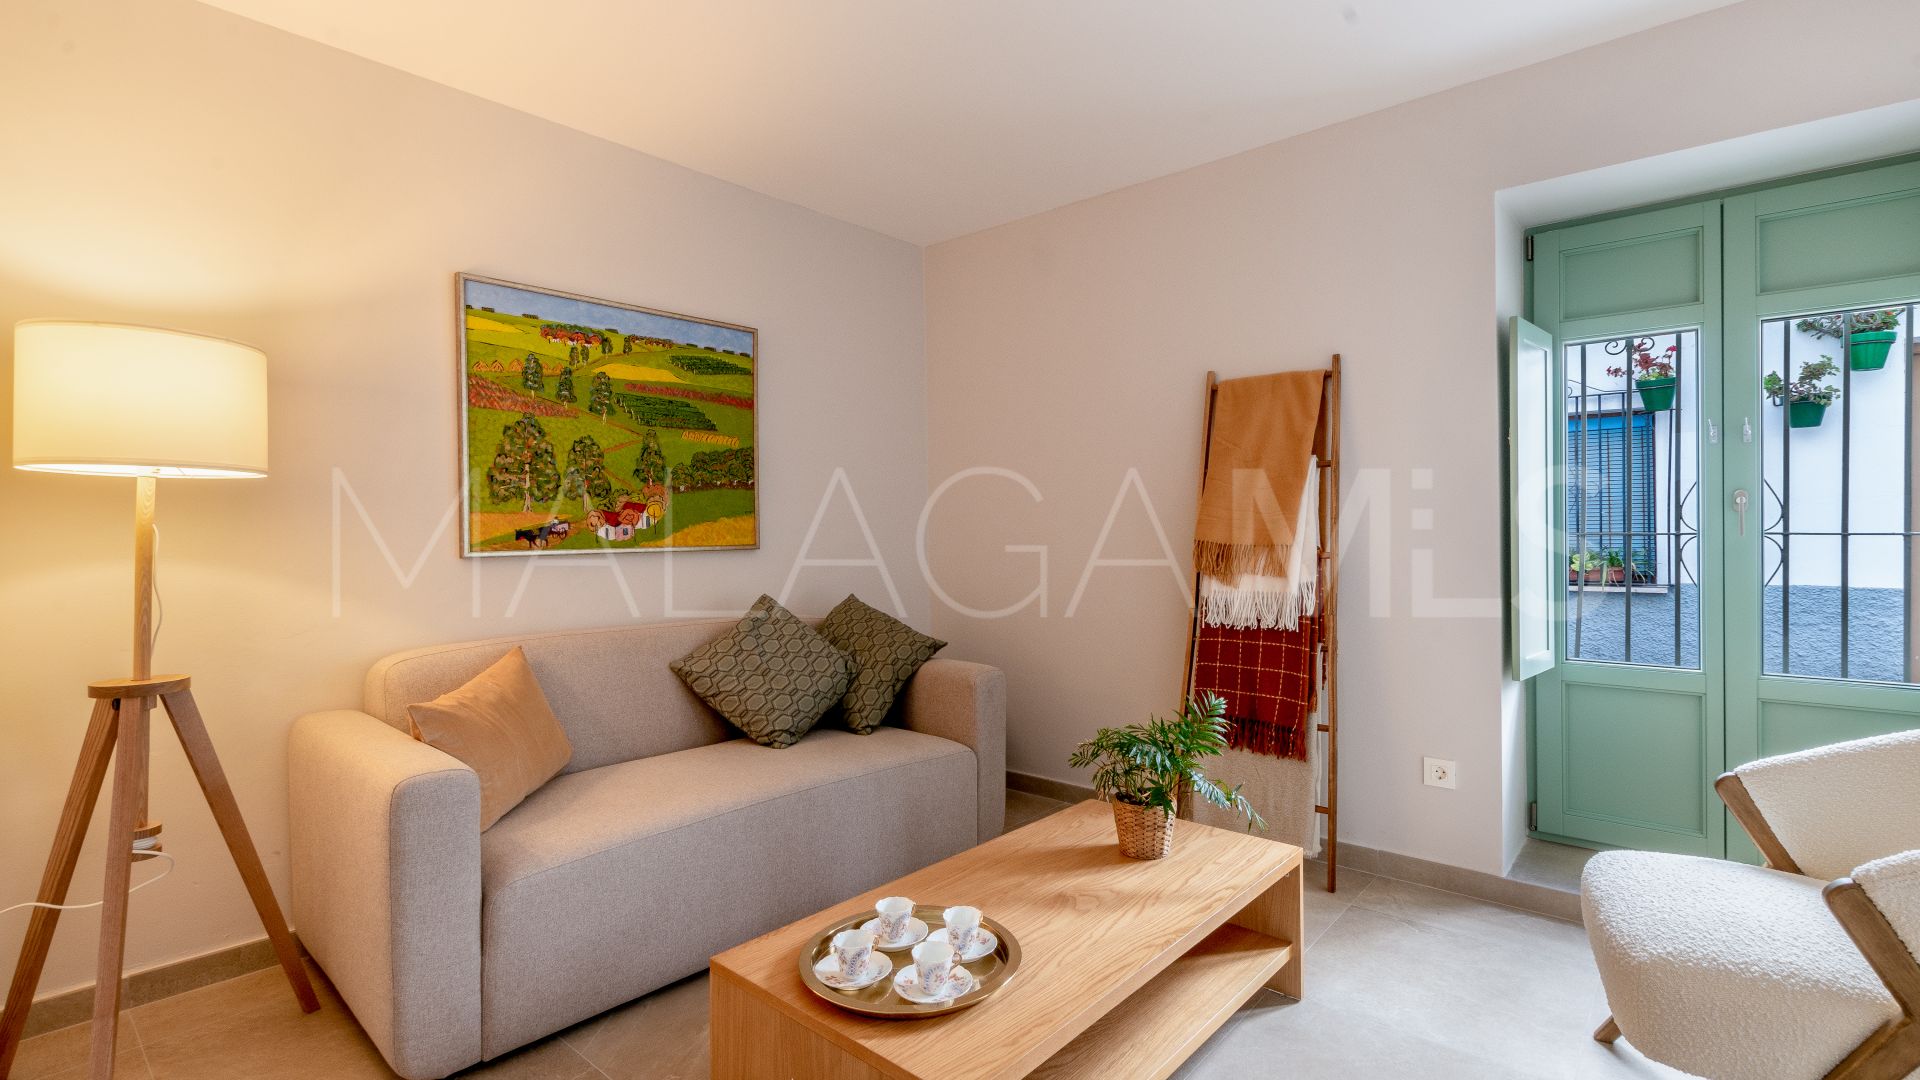 Adosado for sale in Estepona Casco Antiguo with 3 bedrooms